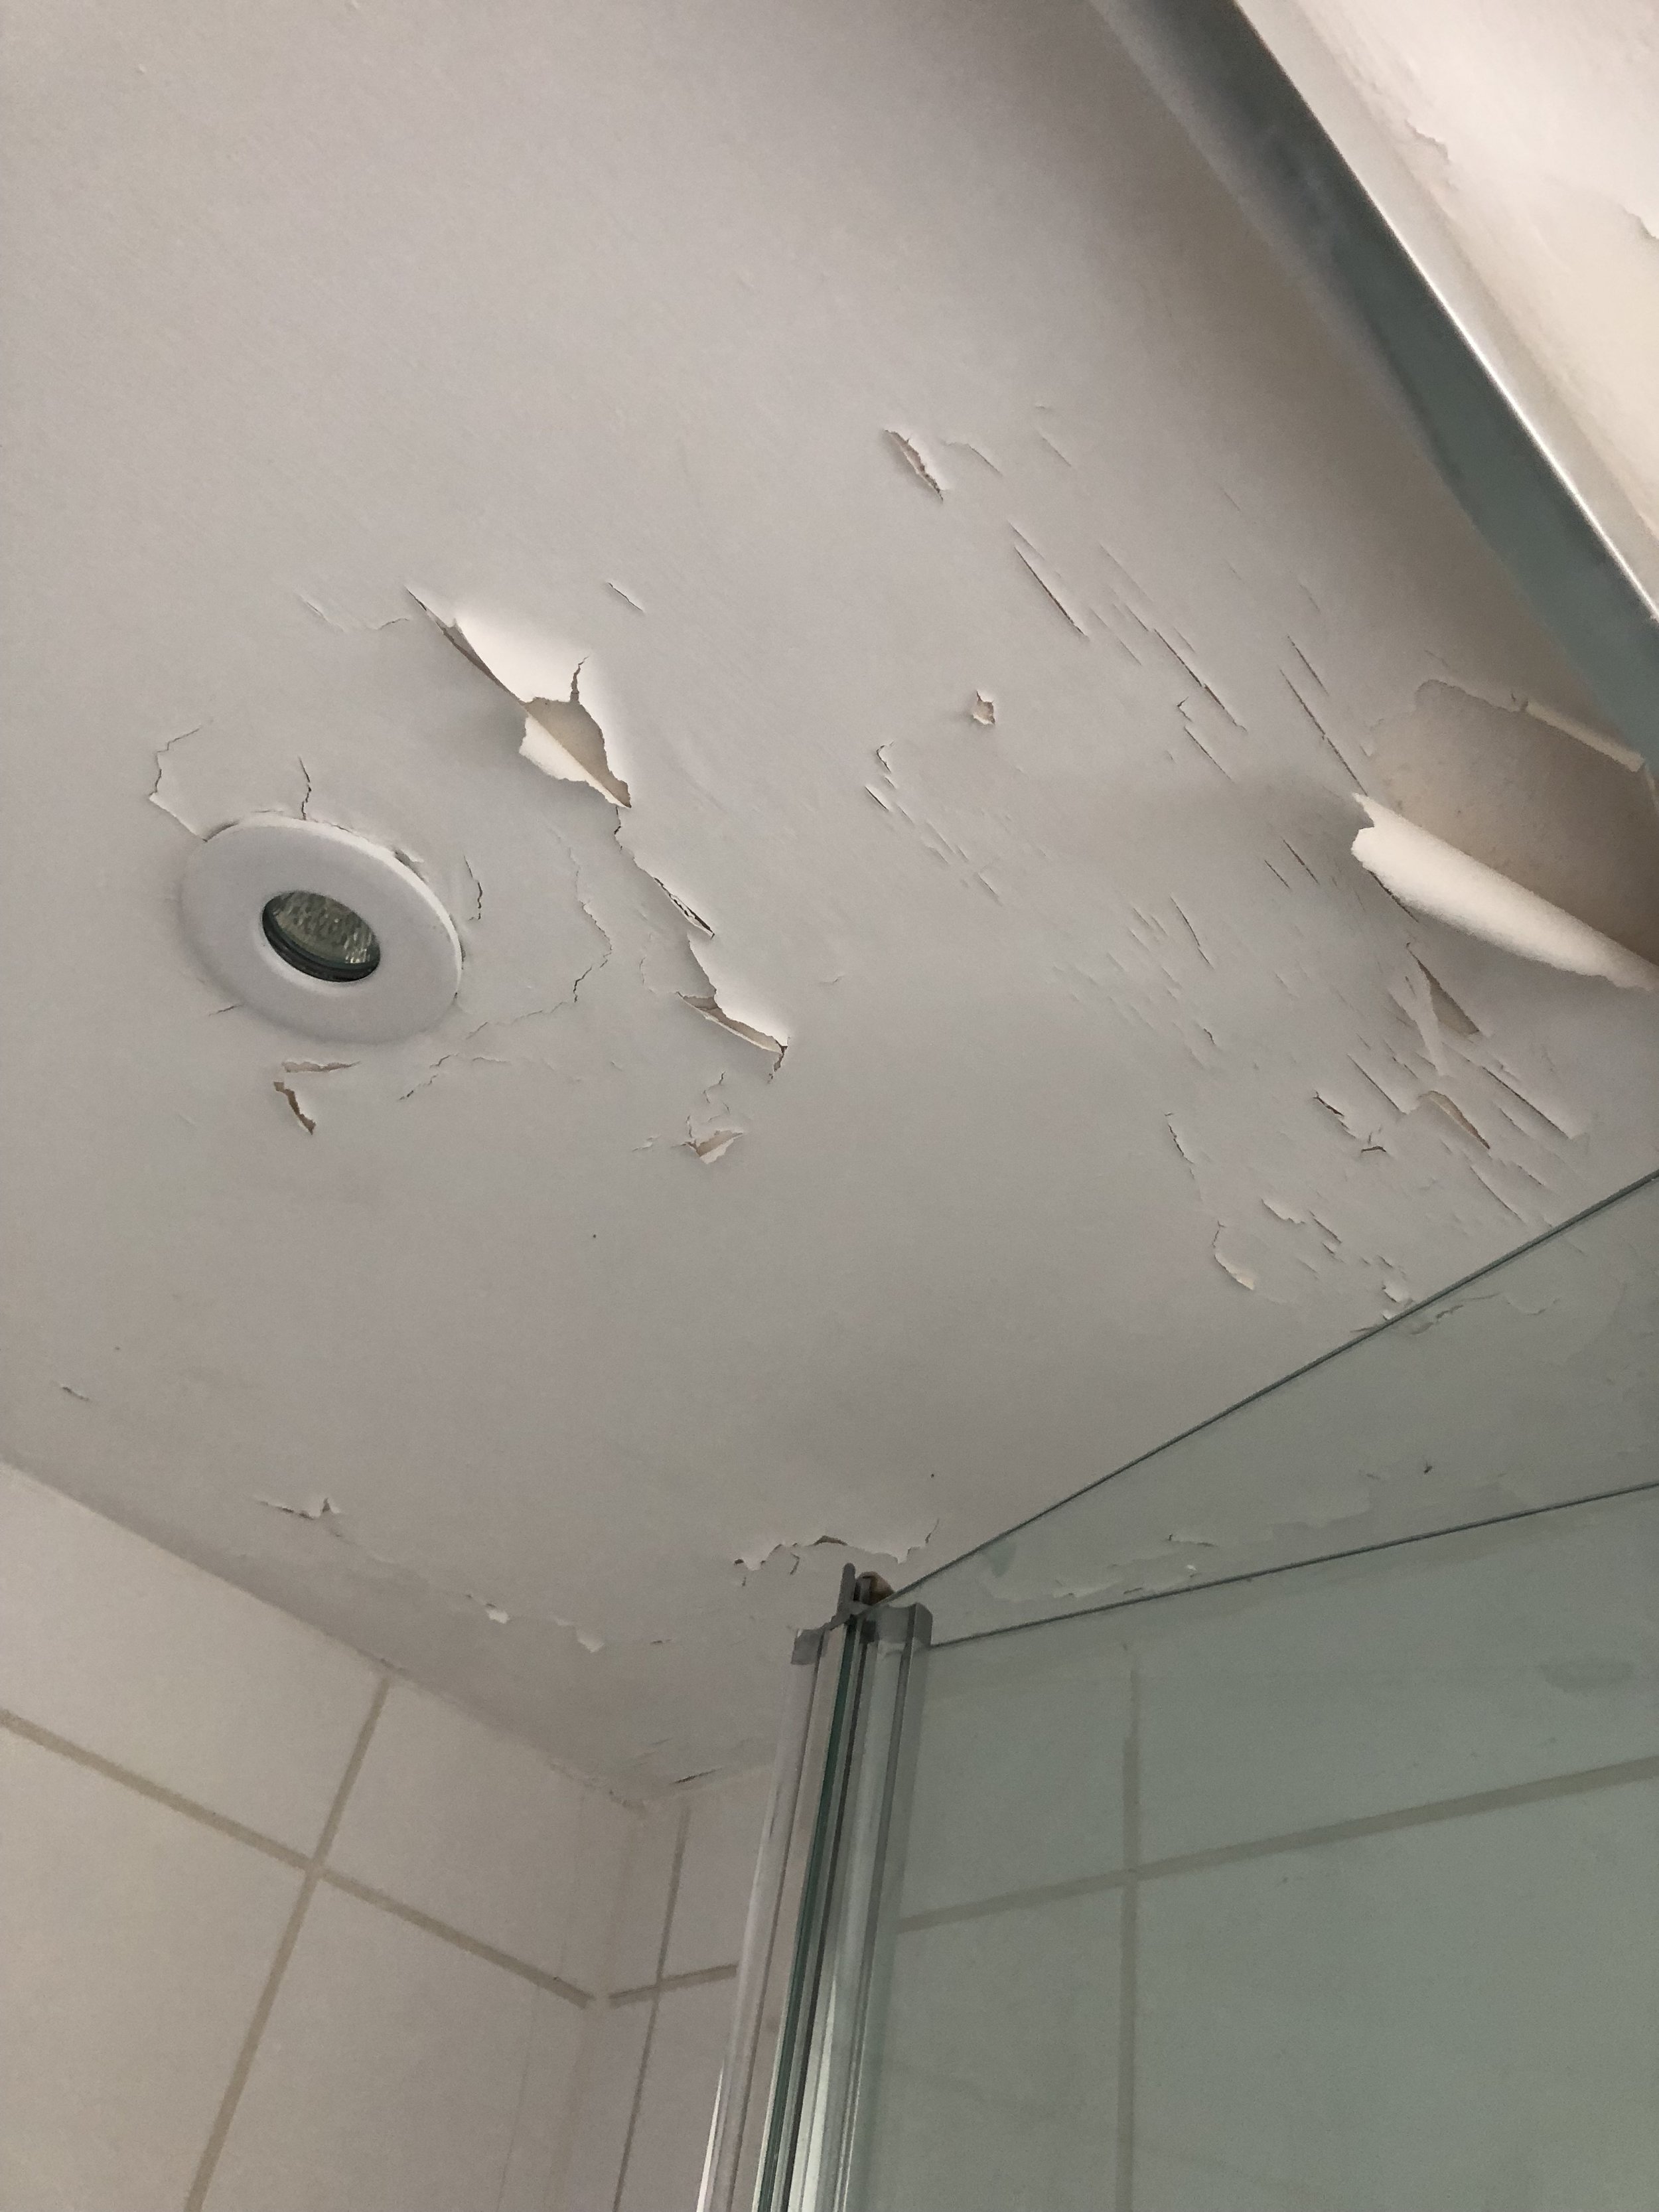 How To Repair A Peeling Bathroom Wall Or Ceiling Melanie Lissack Interiors,Leonardo Dicaprio All Movies List Imdb